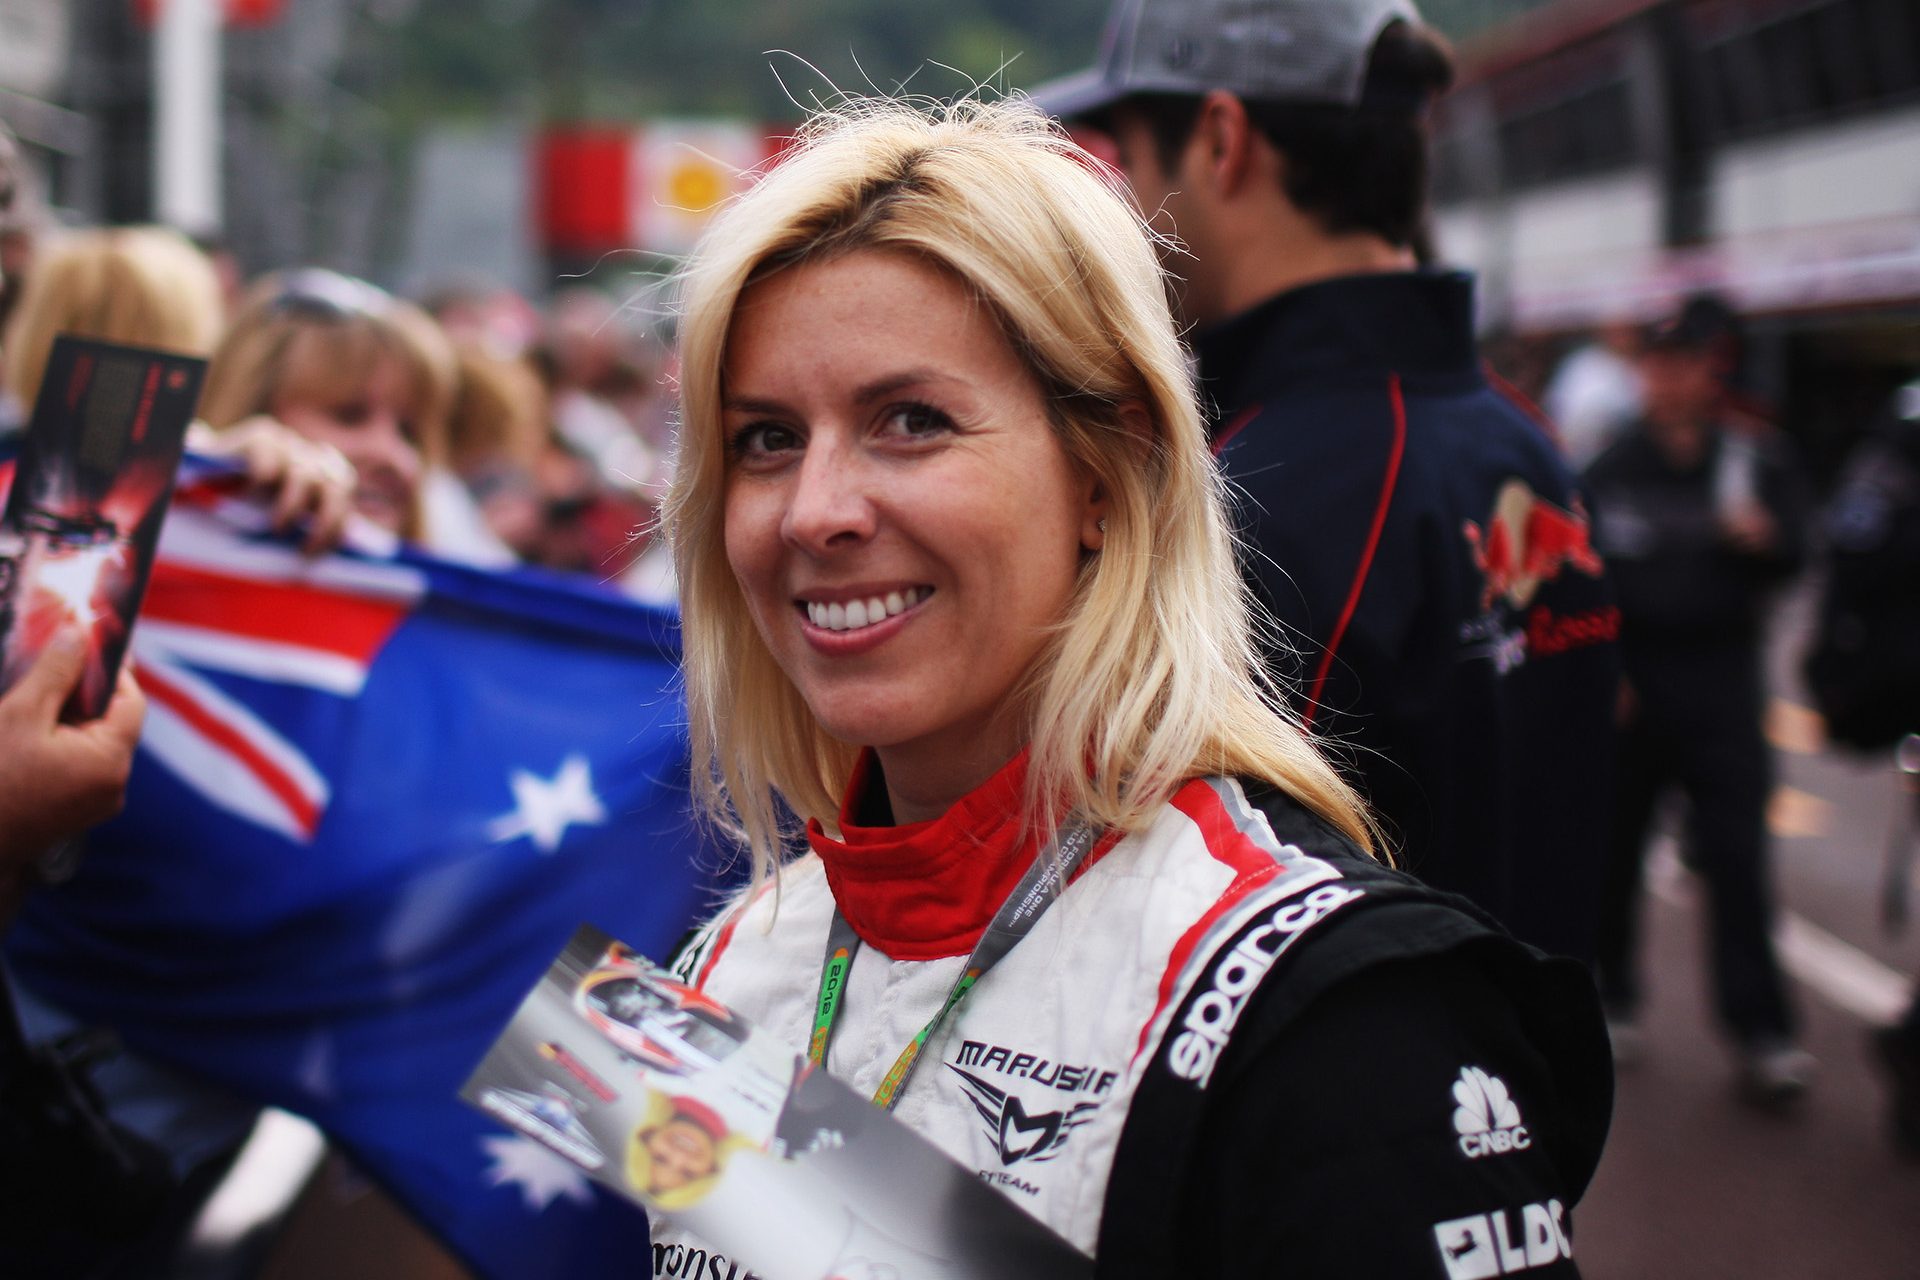 La vie tragique et inspirante de l'ancienne pilote de Formule 1 María de Villota, morte à 33 ans